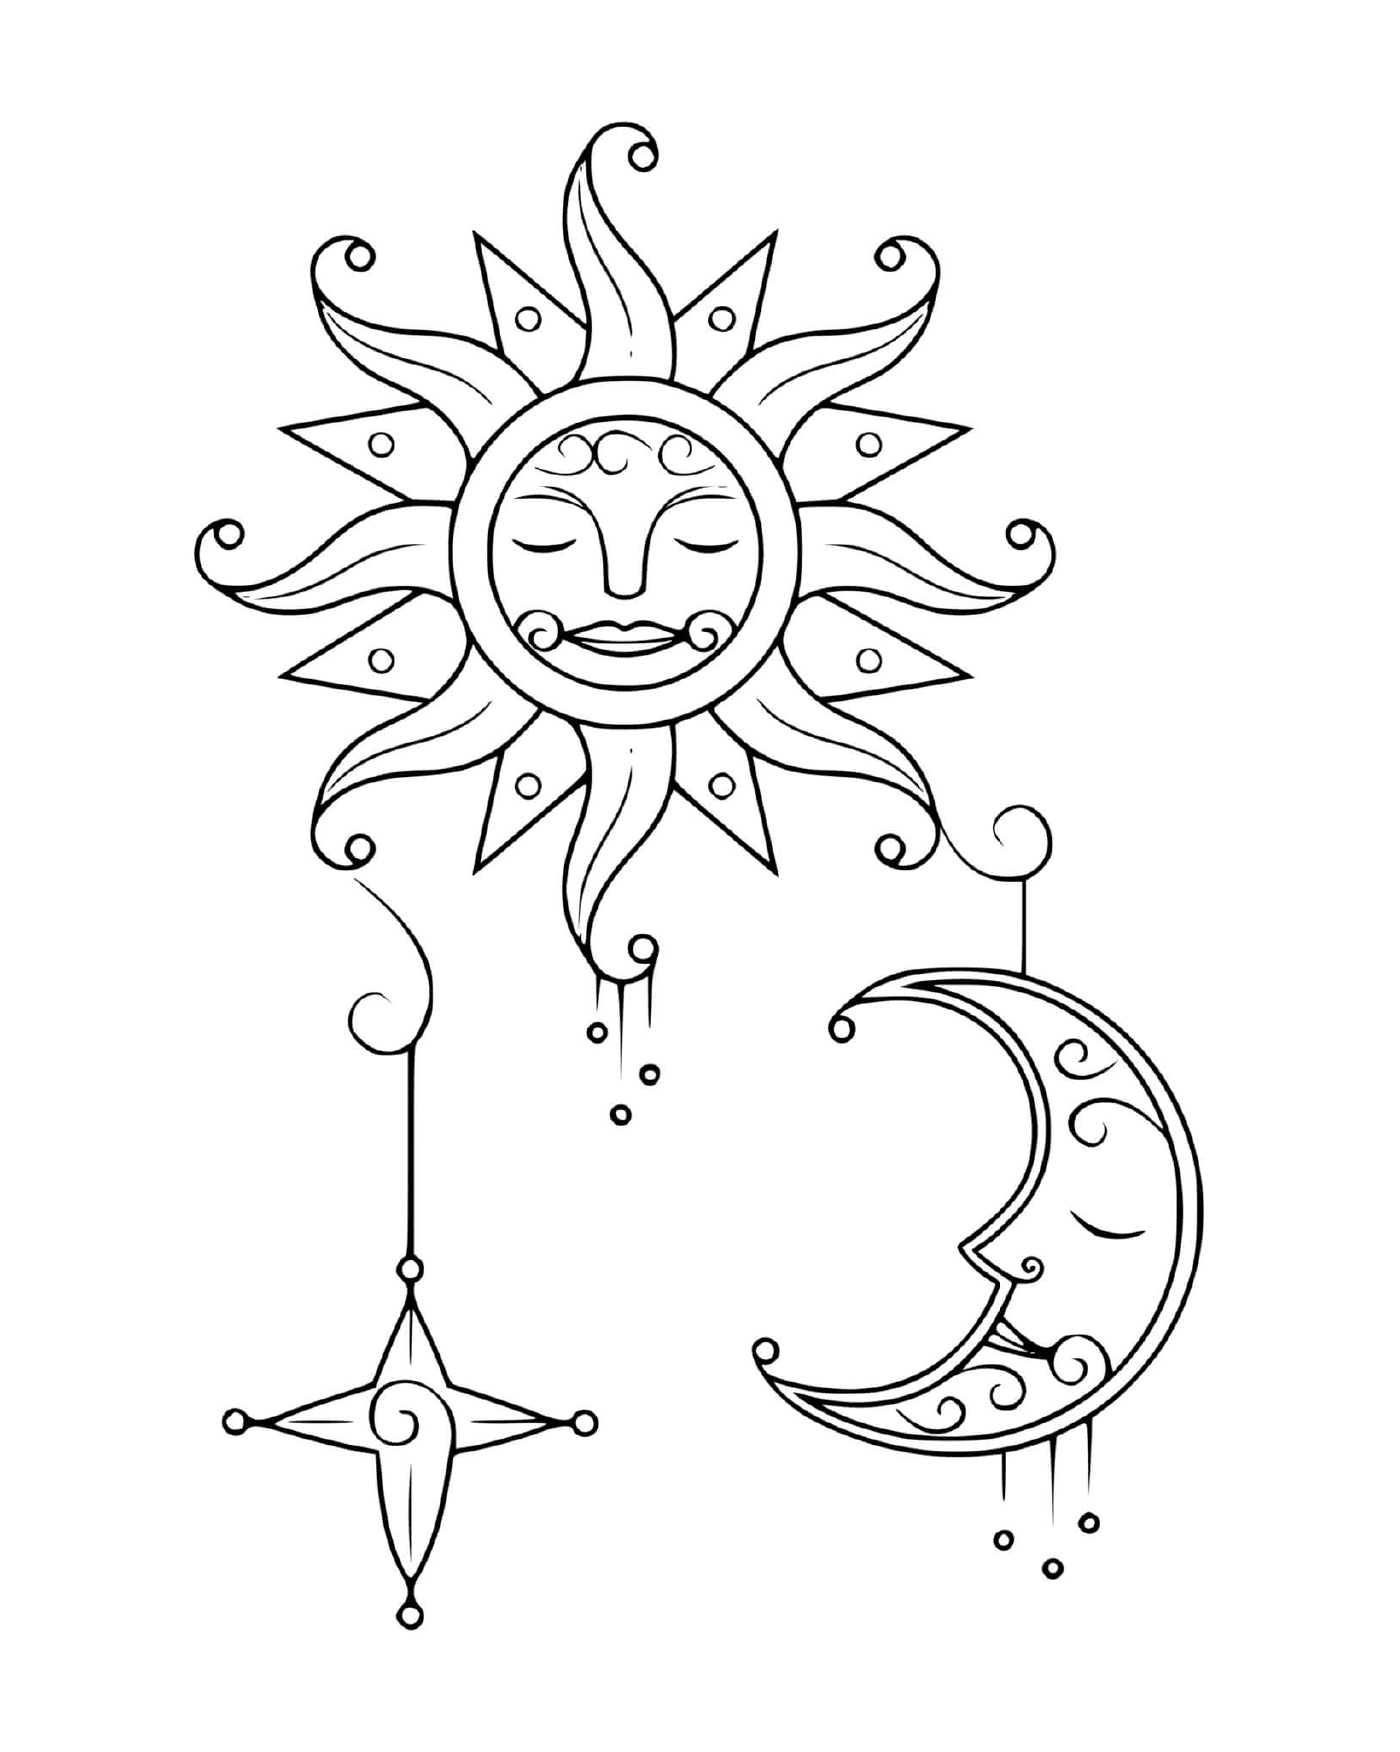  Sonne und Mond 